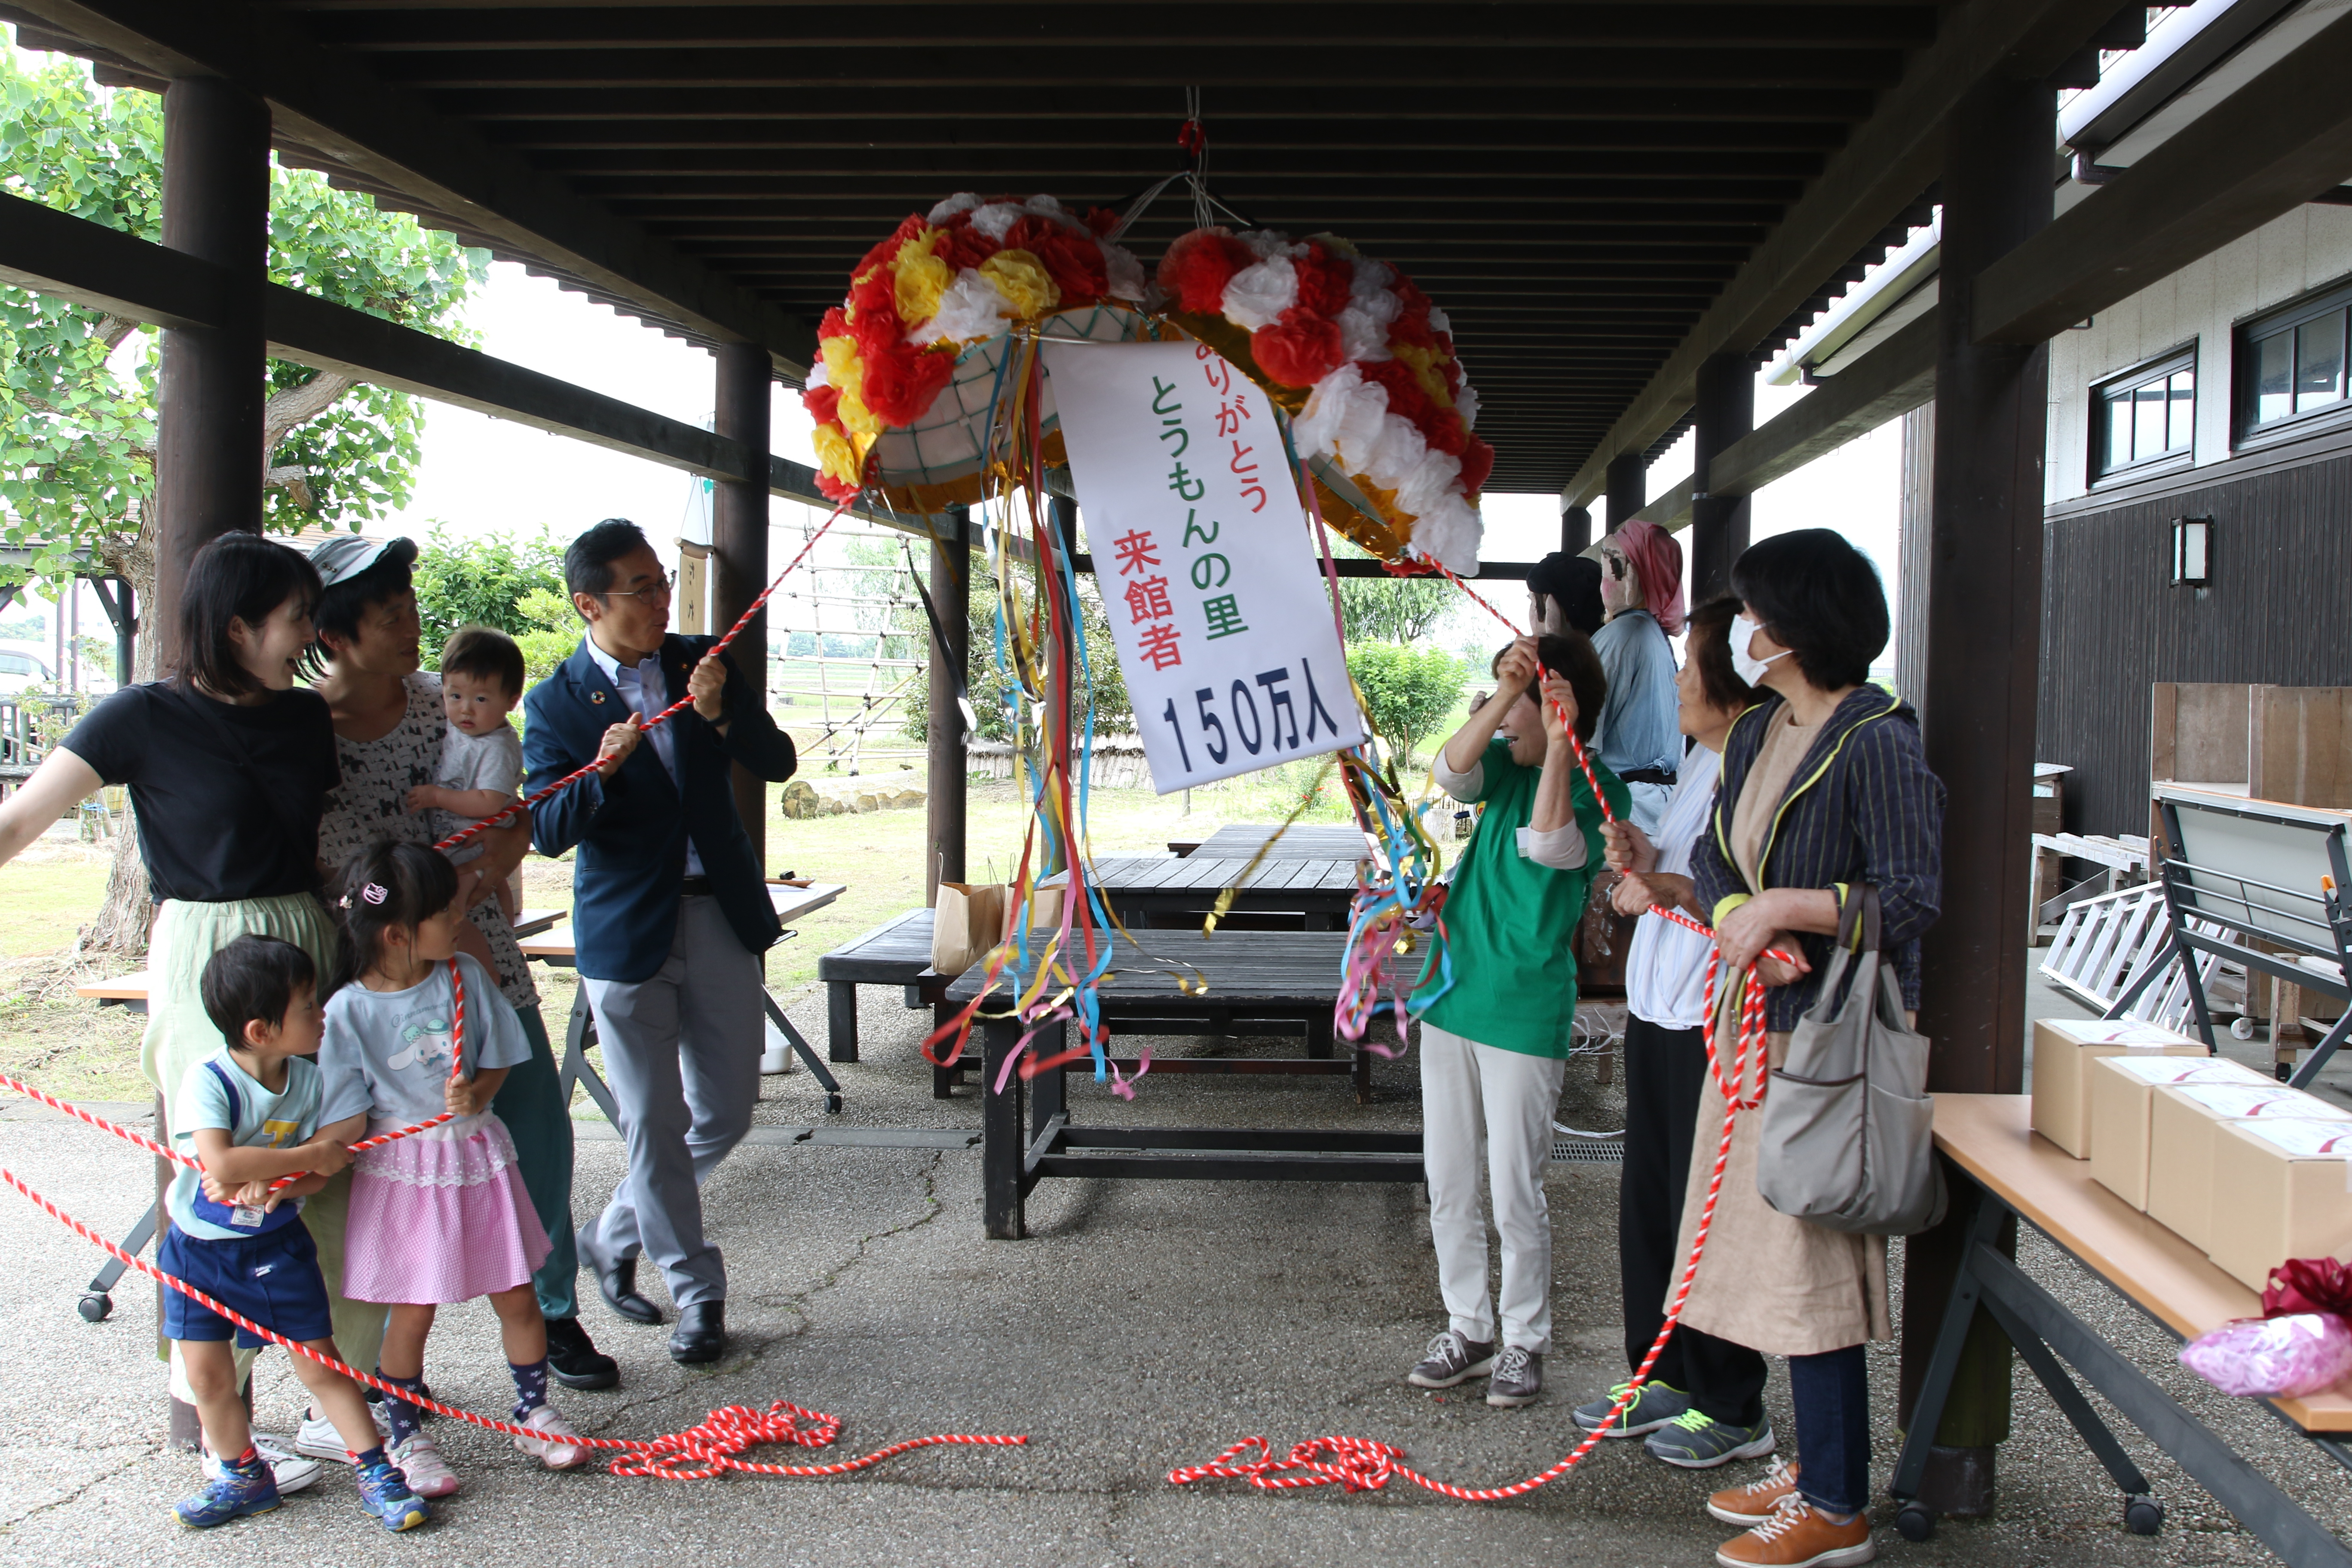 150万人記念のくす玉を開ける来館者たち（左右）と久保田市長（中央左）